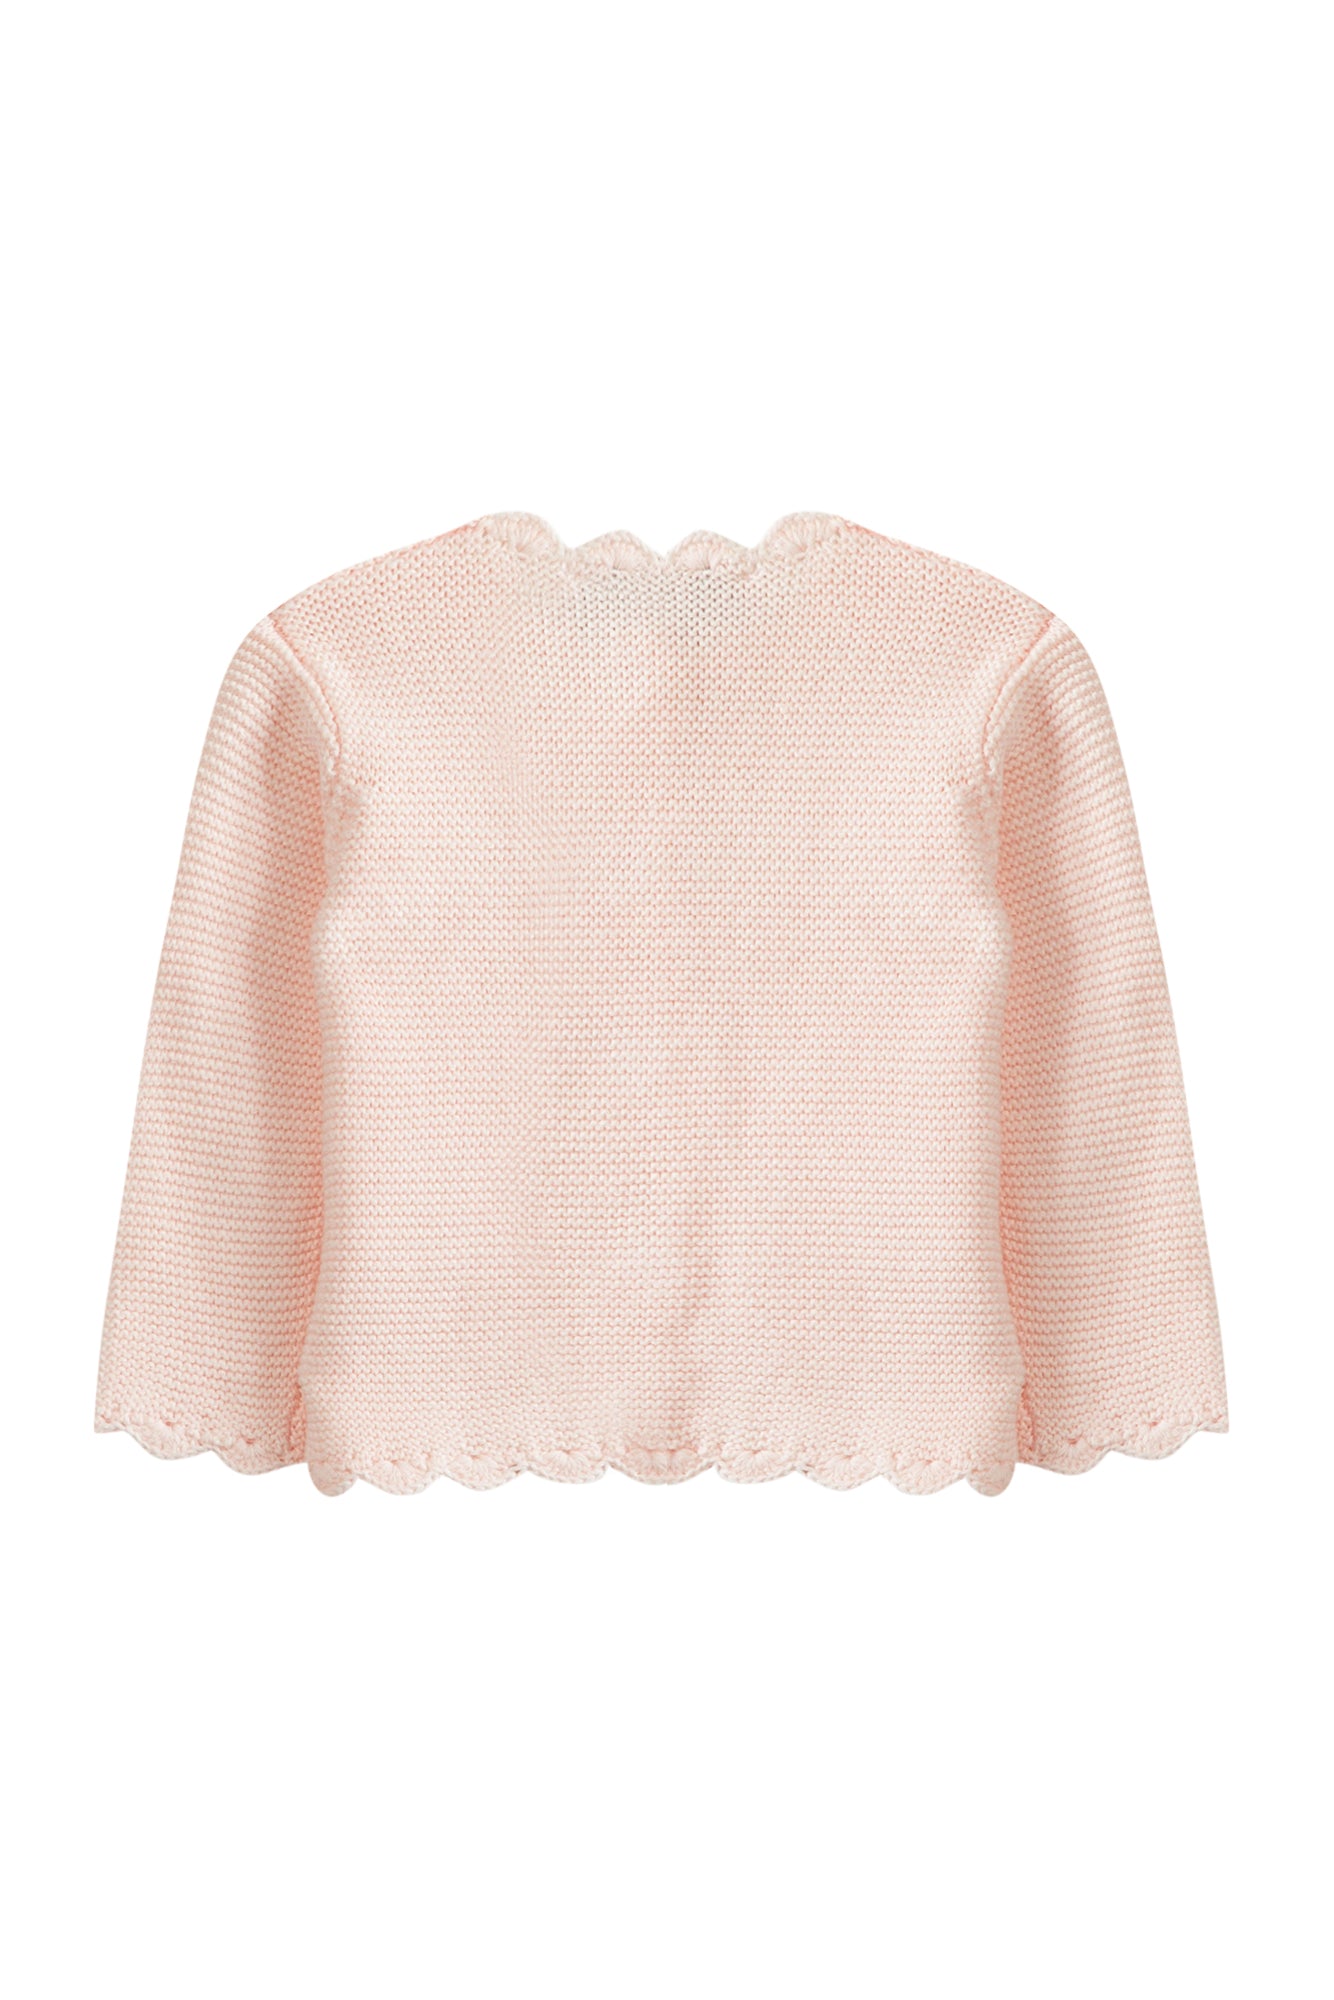 Cardigan - Pale pink cotton knit - Tartine Et Chocolat